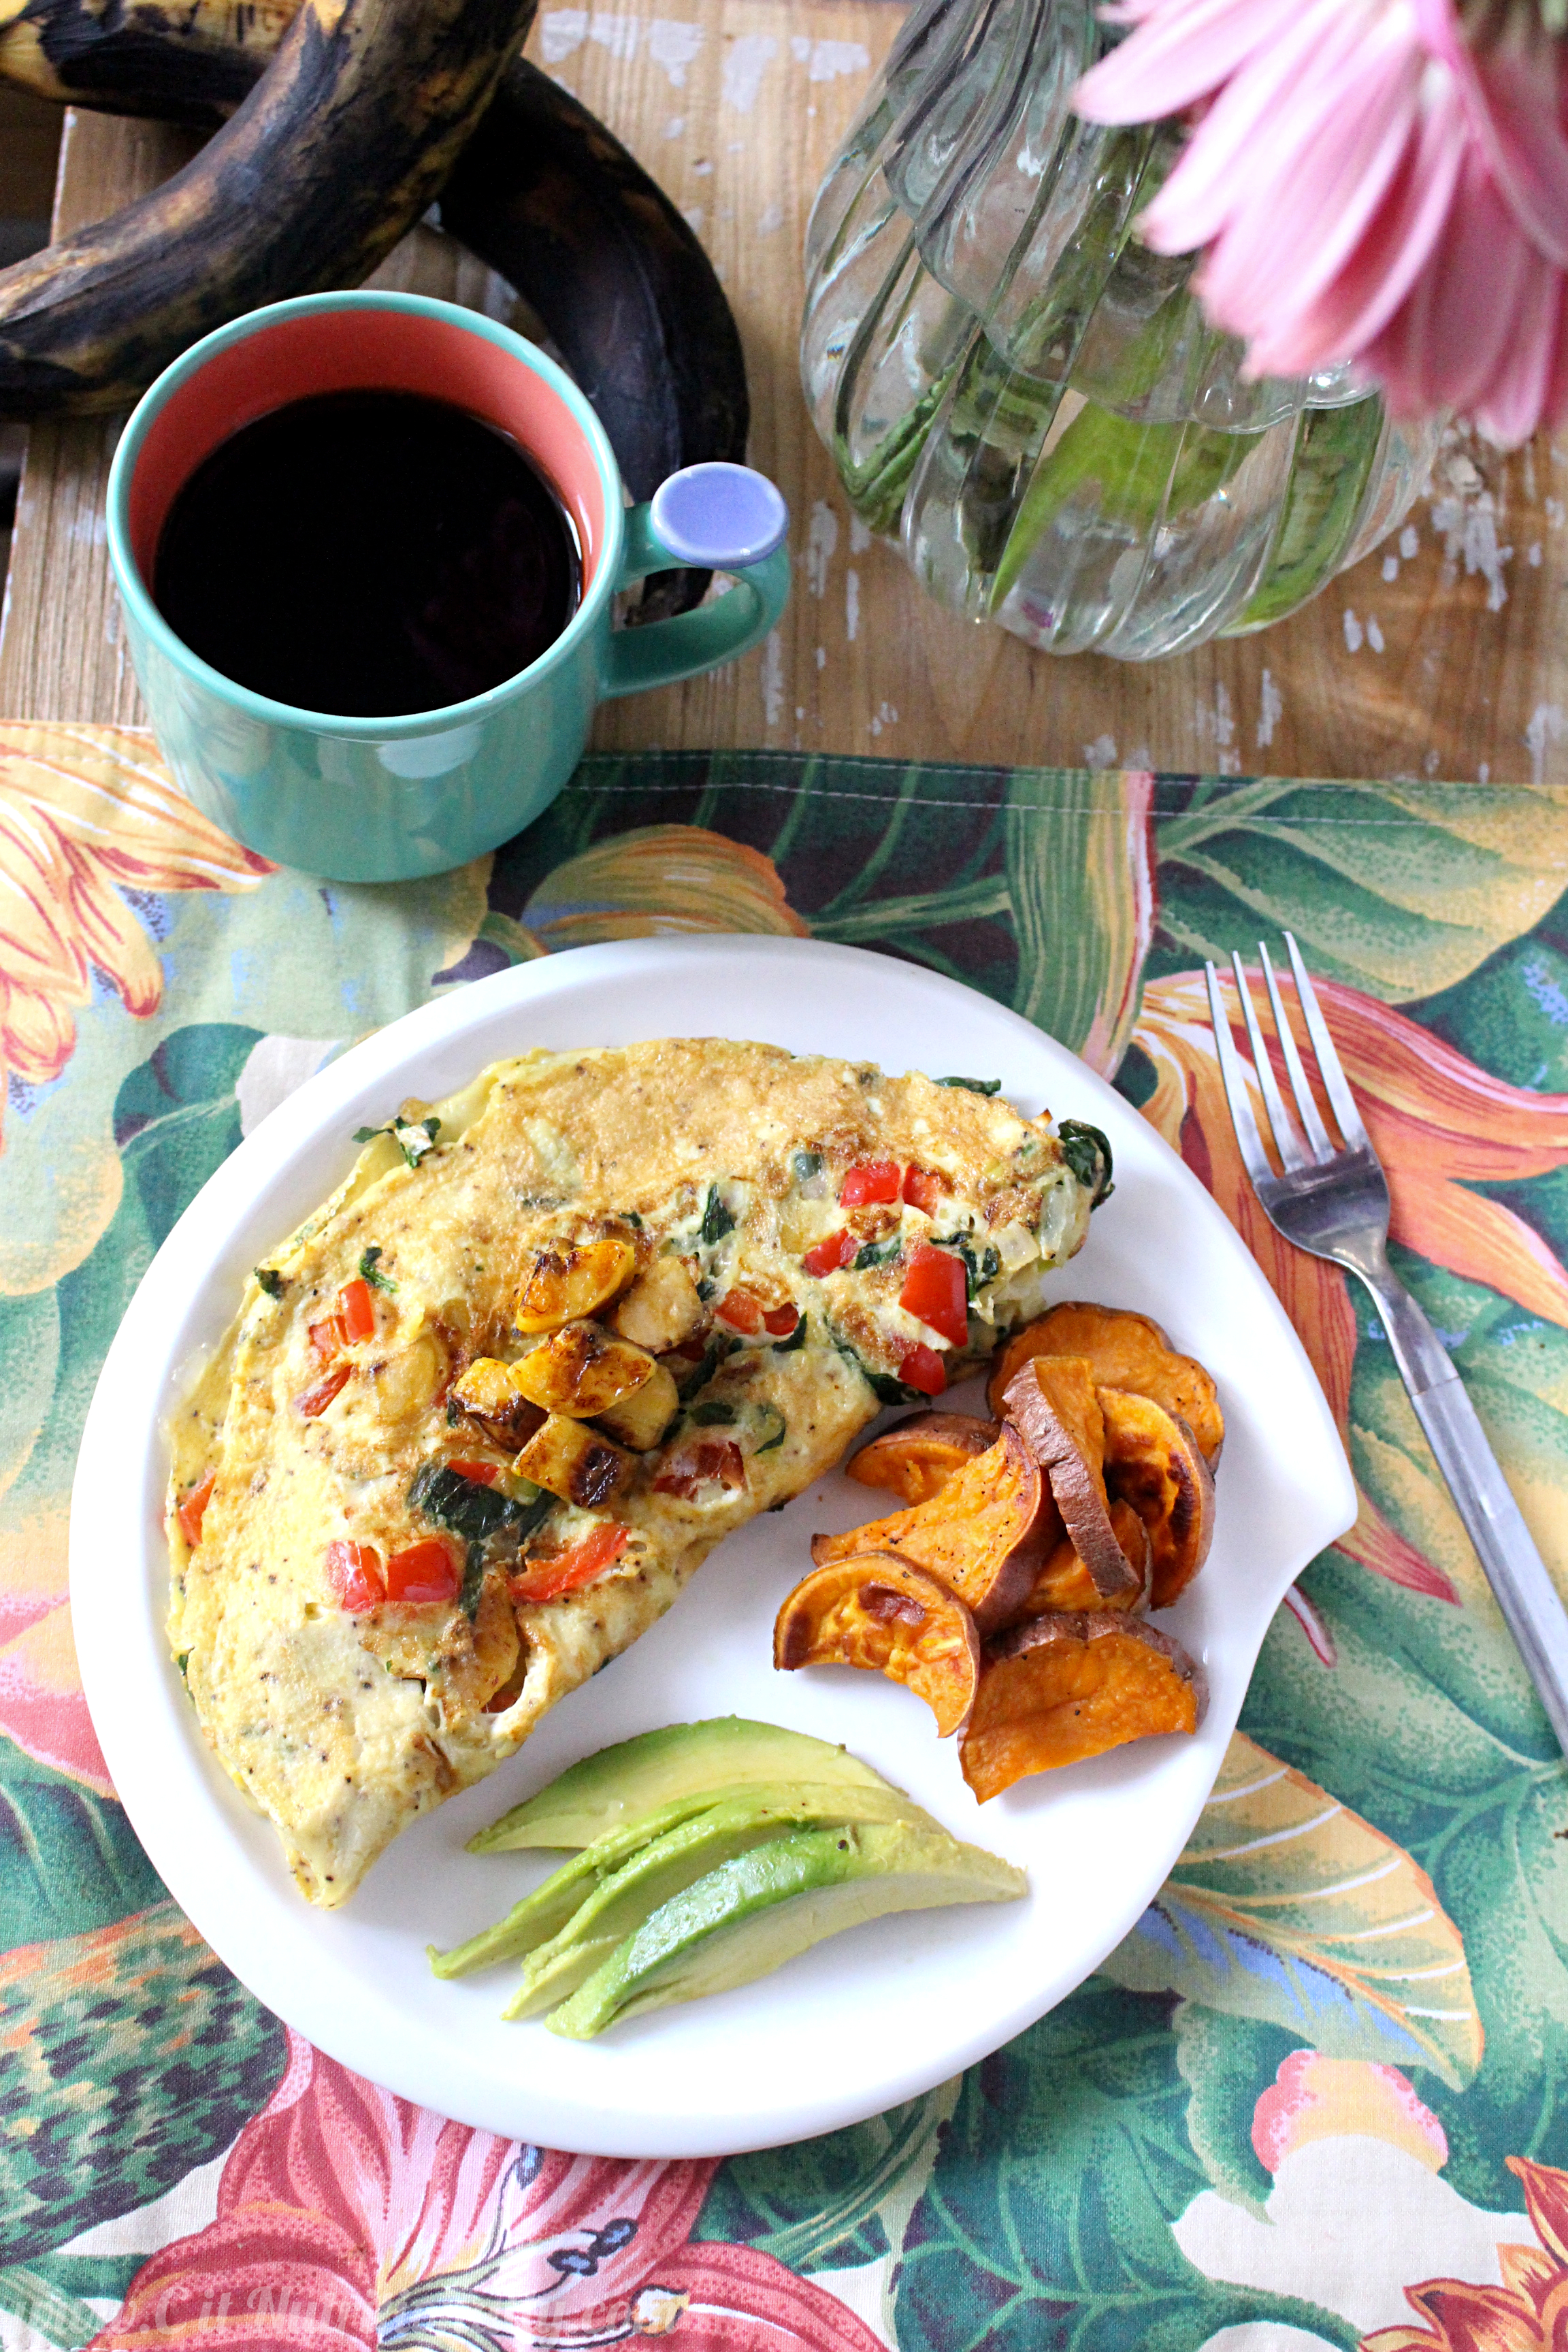 http://chelseyamernutrition.com/wp-content/uploads/2015/04/Puerto-Rican-Omelette-C-it-Nutritionally-2.jpg